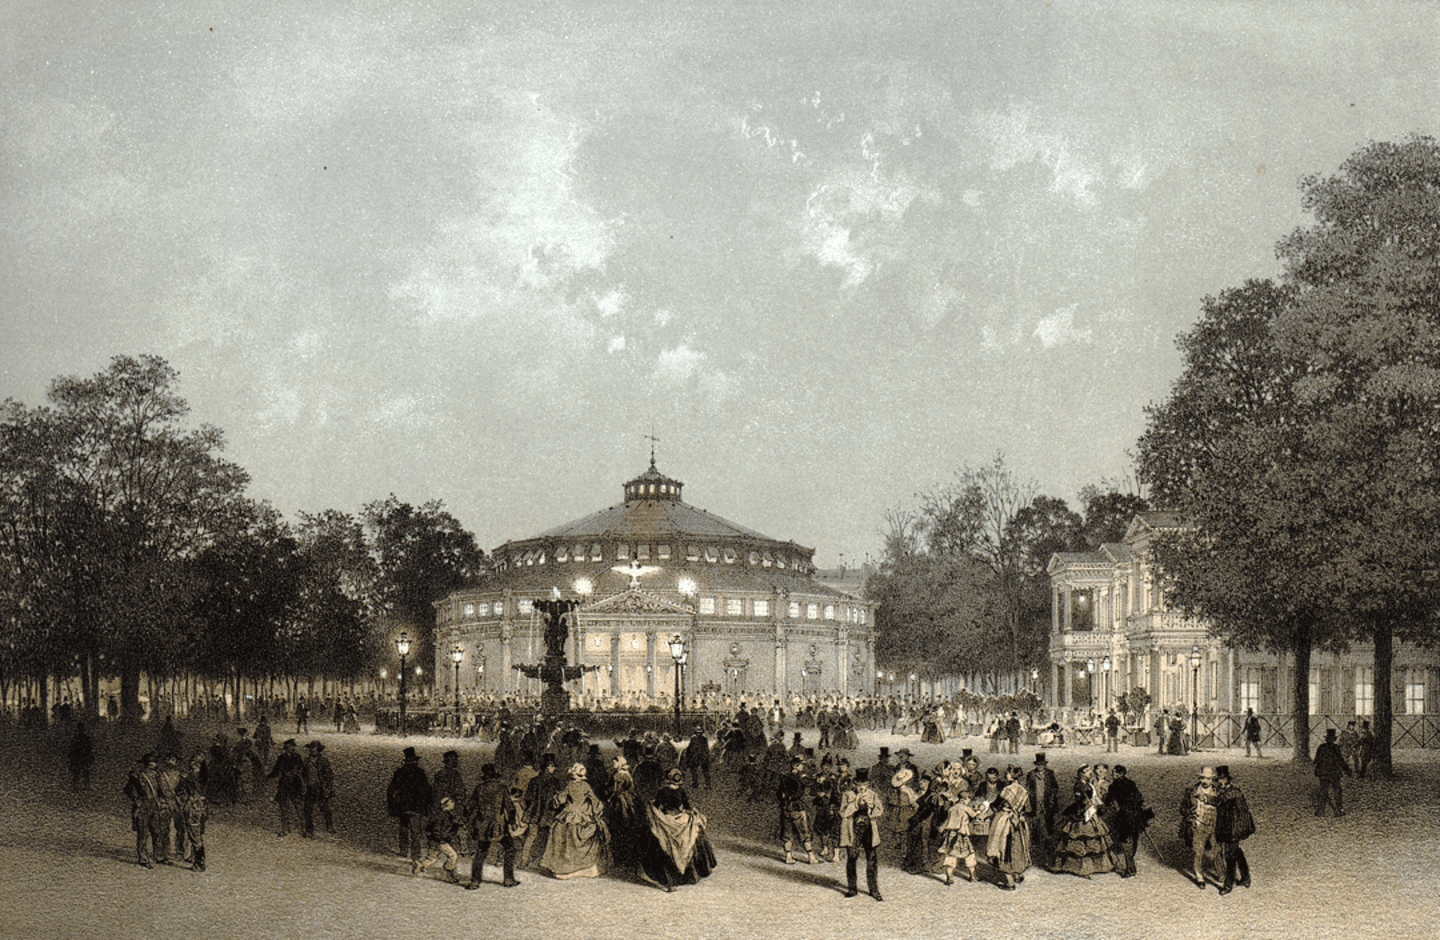 Eine Abbildung von dem Cirque d'hiver, der Winterzirkus, den Jakob Ignaz Hittorff als Architekt schuf. Die Eröffnung des Zirkus war 1852. Das Zirkuszelt ist zentral abgebildet und drum herum halten sich viele Personen in Abendkleidung auf.